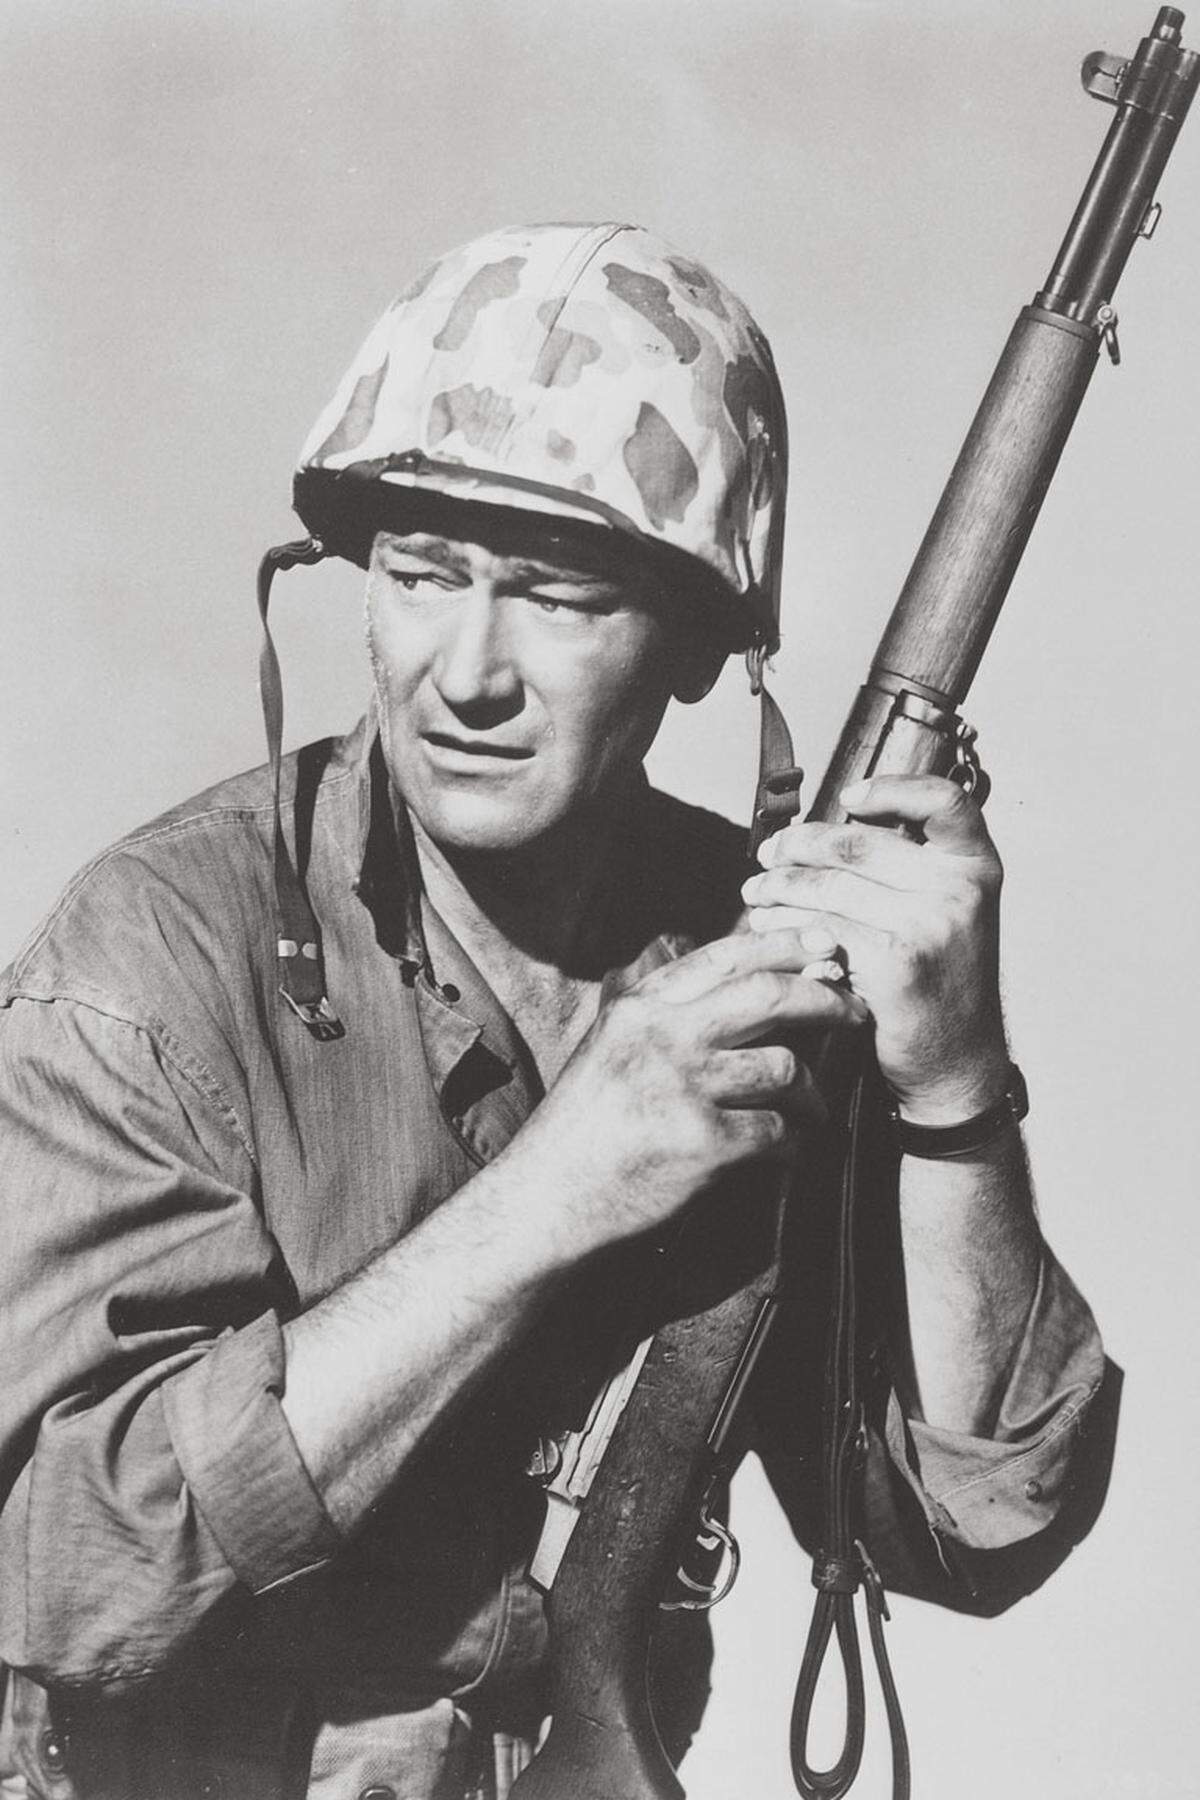 Mit der Veröffentlichung in den Zeitungen verselbständigt sich das Bild - und seine Wirkung. Bei diversen Gedenktagen wird das Foto etwa von anderen Menschen nachgestellt. Auch die drei überlebenden "Flag Raisers" müssen ihre Heldengeschichte ständig öffentlich wiederkauen.Das mündet 1949 in dem patriotischen Marines-Hollywoodwerbefilm "Sands of Iwo Jima" mit John Wayne in der Hauptrolle. Die drei Überlebenden haben darin sogar einen Kurzauftritt.